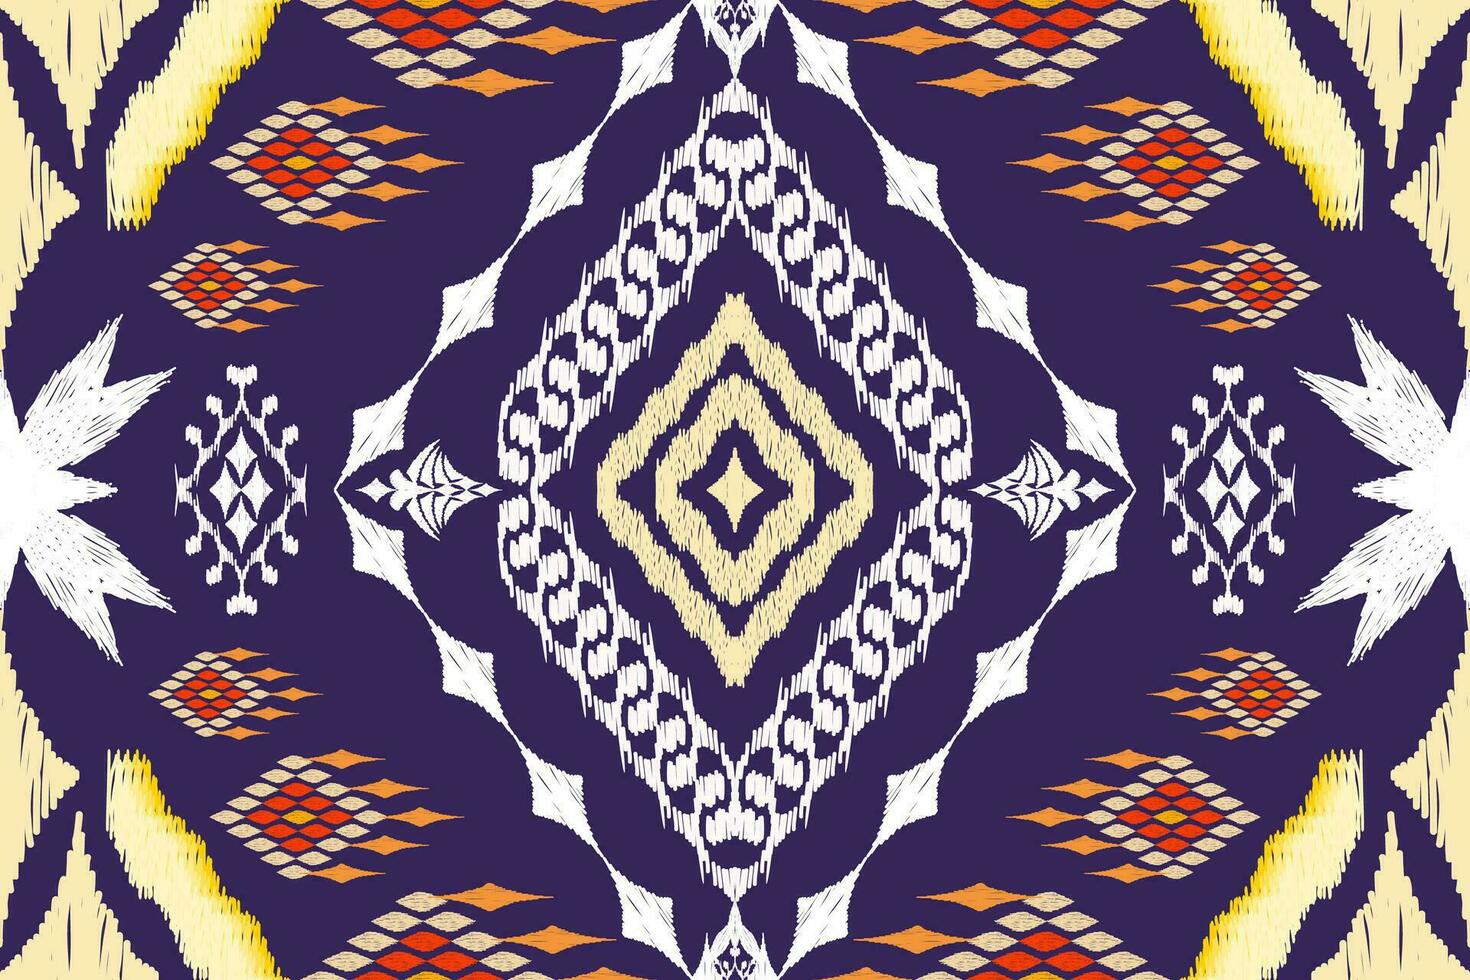 geométrico étnico asteca bordado estilo.figura ikat oriental tradicional arte padrão.design para étnico plano de fundo,papel de parede,moda,vestuário,embrulho,tecido,elemento,sarong,gráfico ilustração. vetor